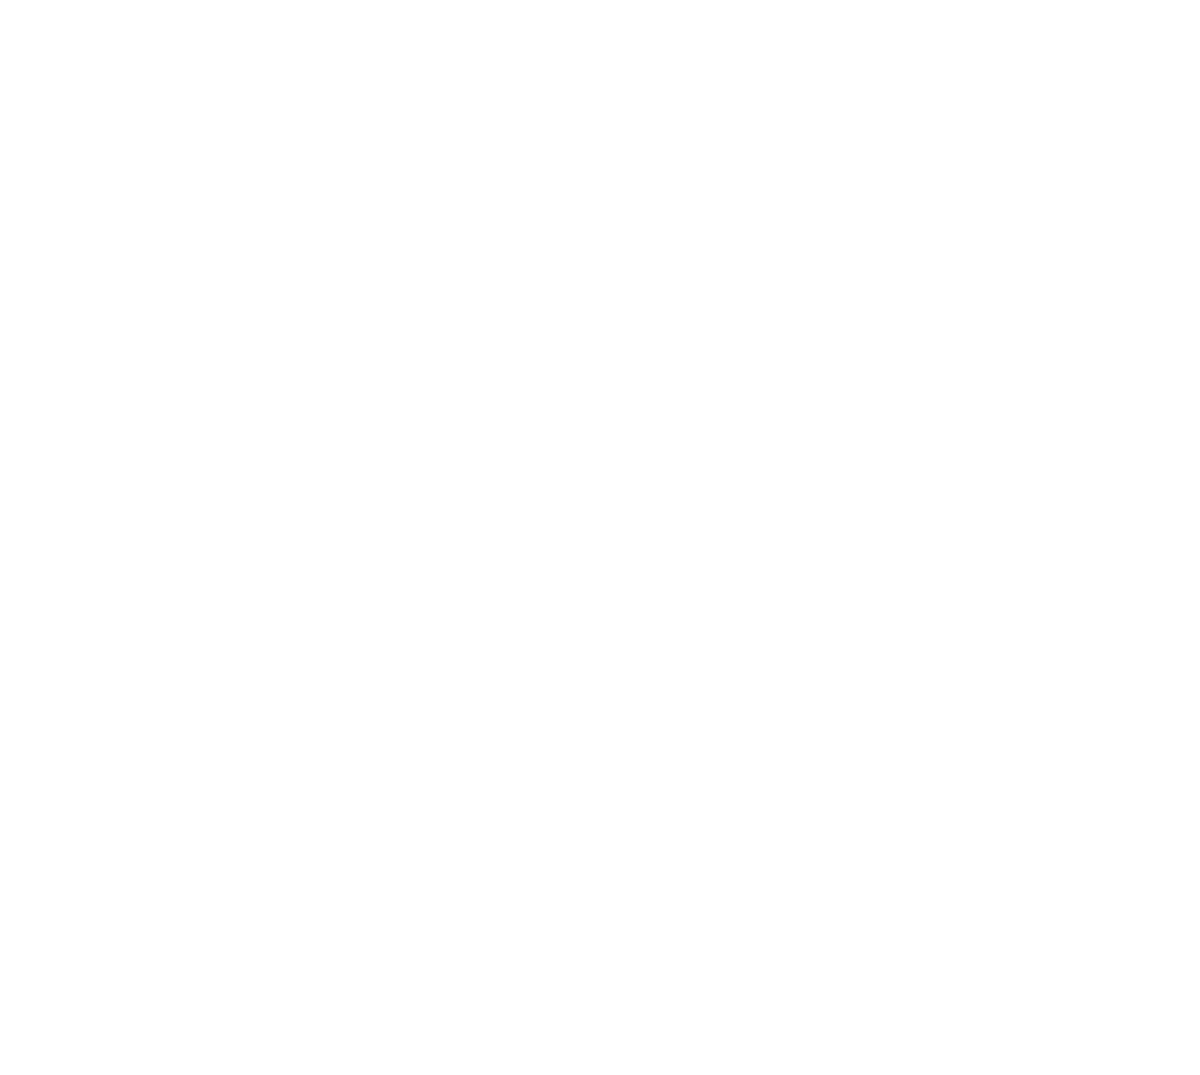 Level Ground Logo